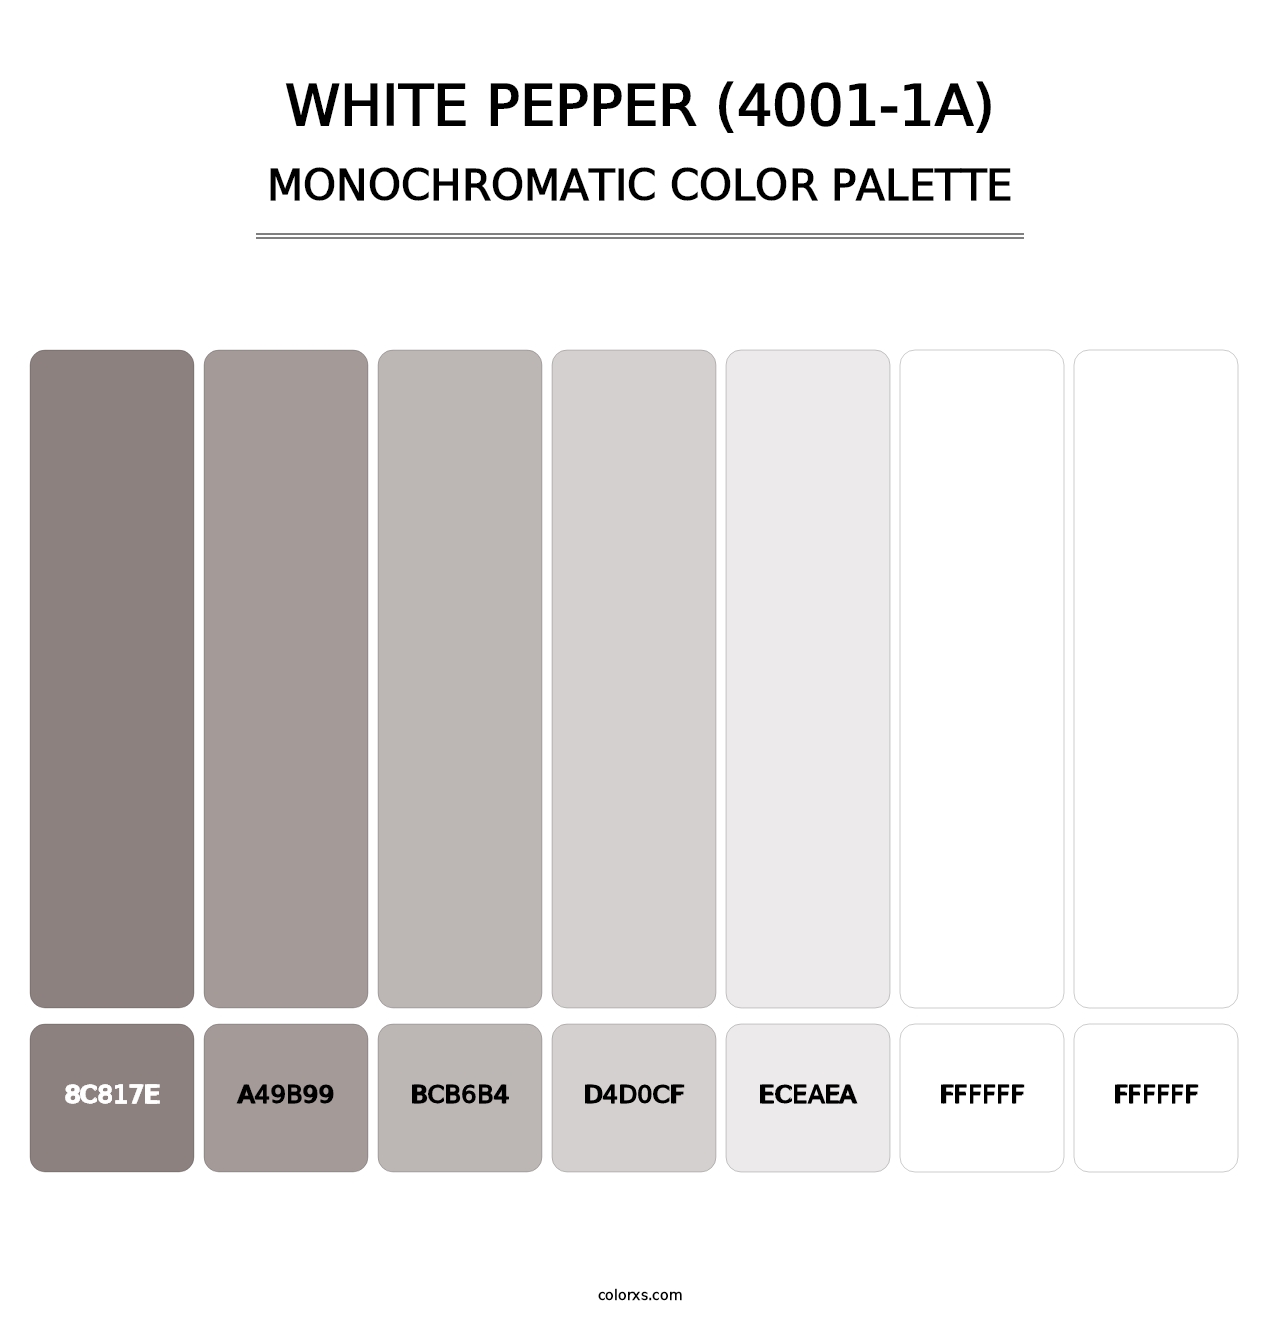 White Pepper (4001-1A) - Monochromatic Color Palette